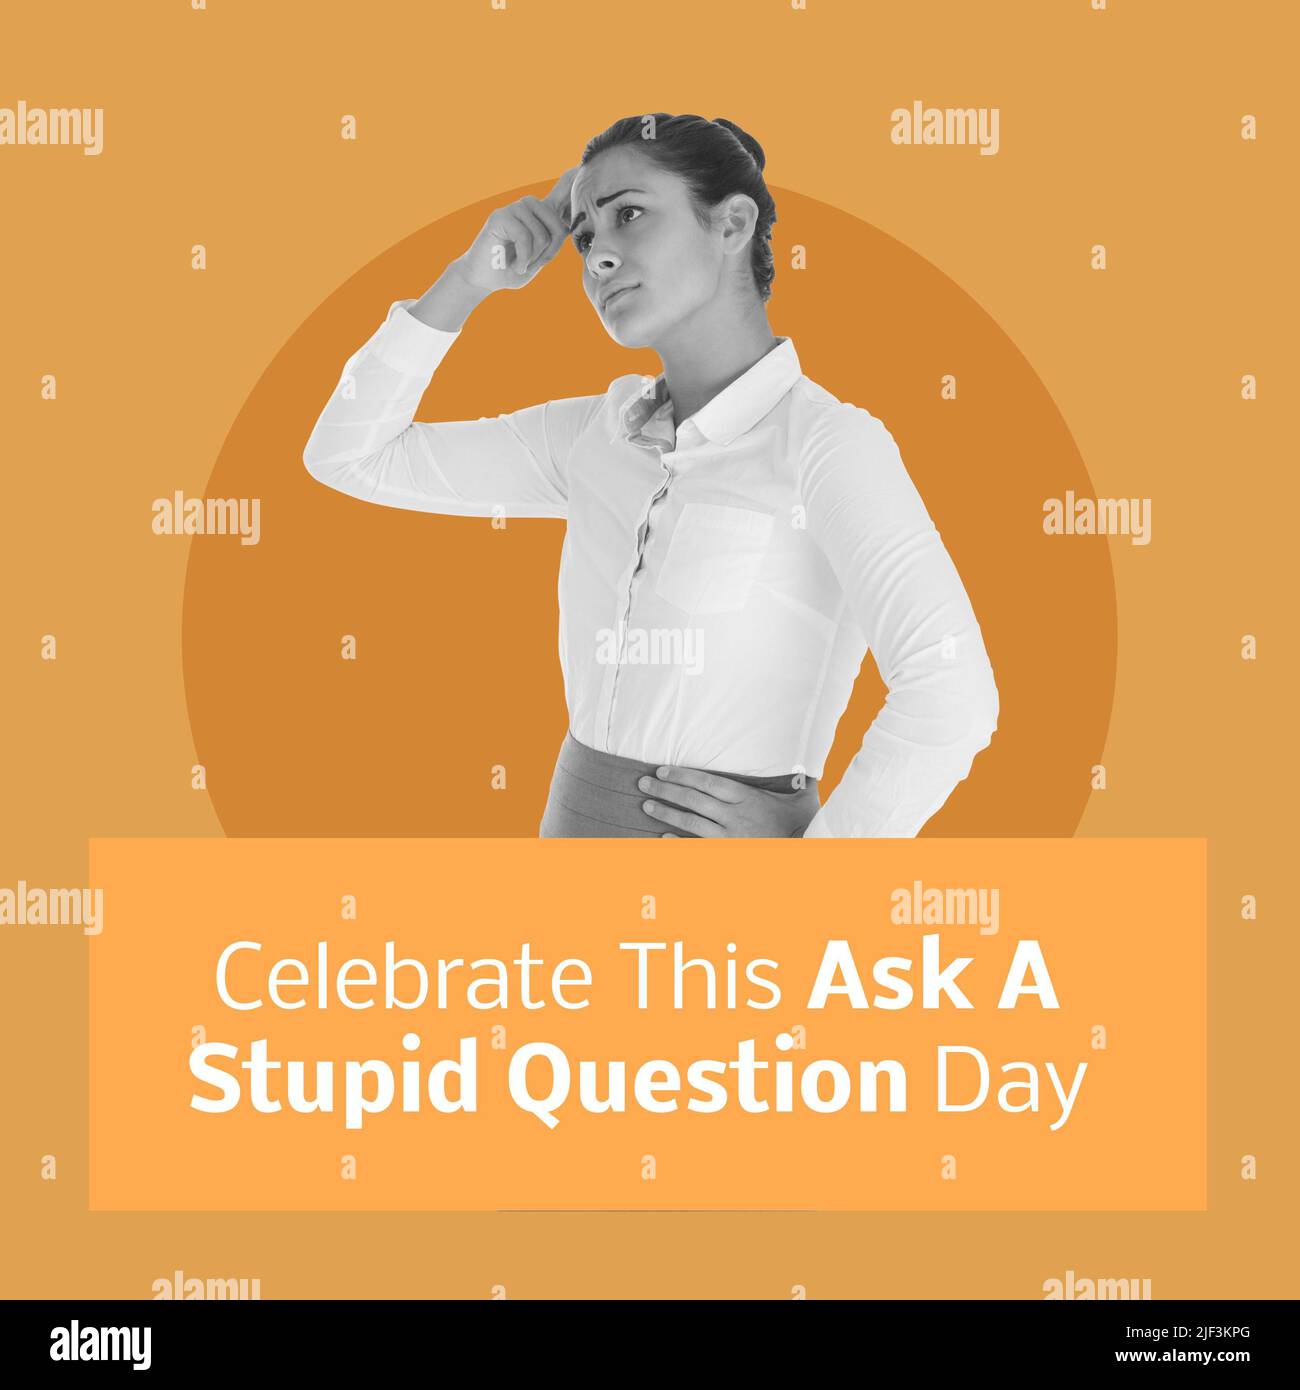 Immagine composita digitale della giovane donna preoccupata con celebrare questo chiedere un testo stupido giorno delle domande Foto Stock